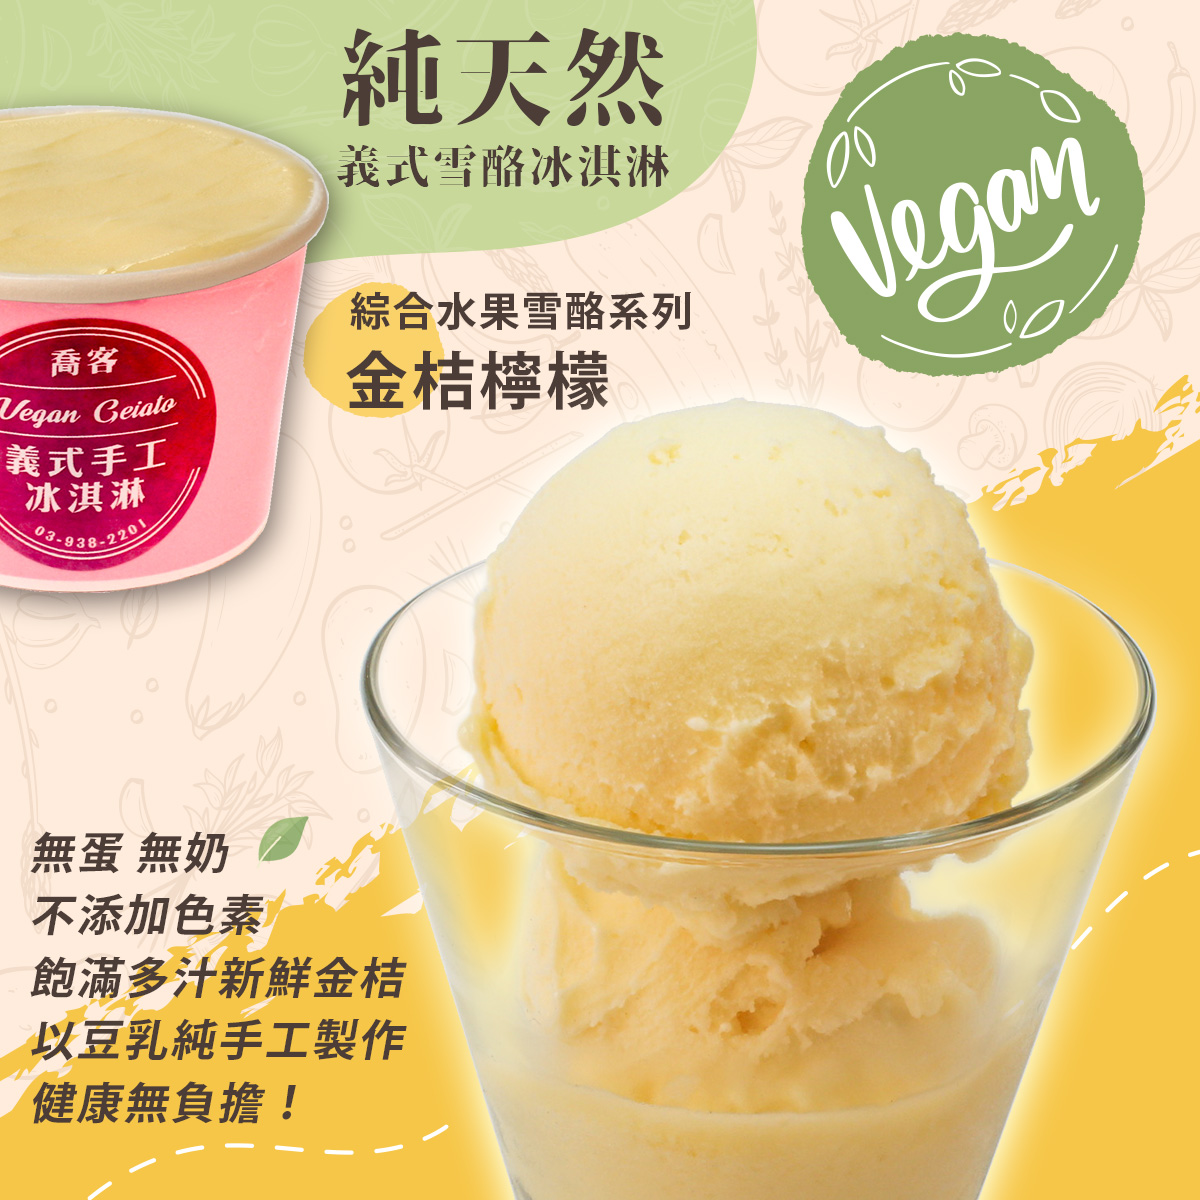 【喬客】綜合水果雪酪系列-金桔檸檬 冰淇淋